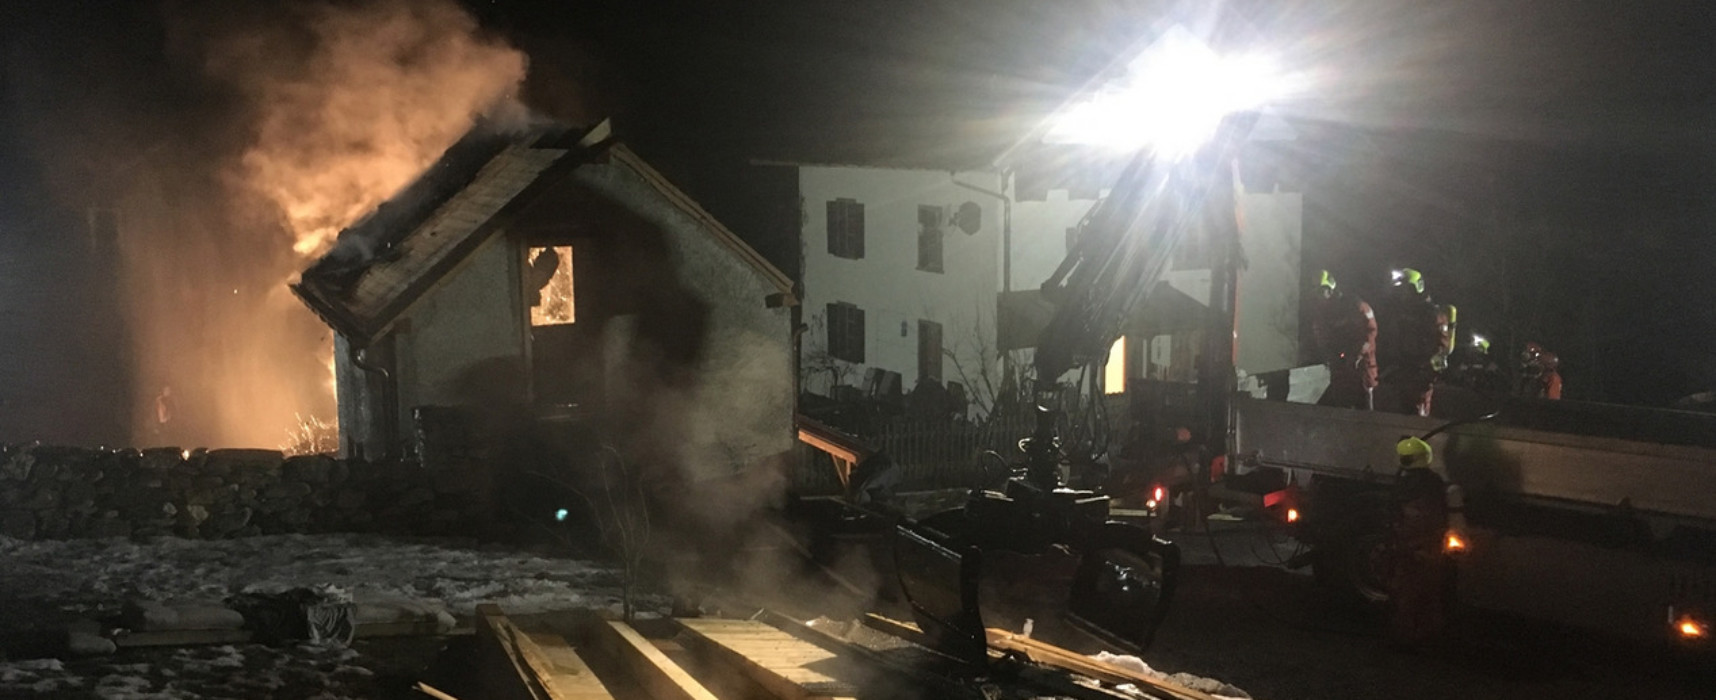 Brand in Paspels: Feuerwehreinsatz wegen Saunahaus